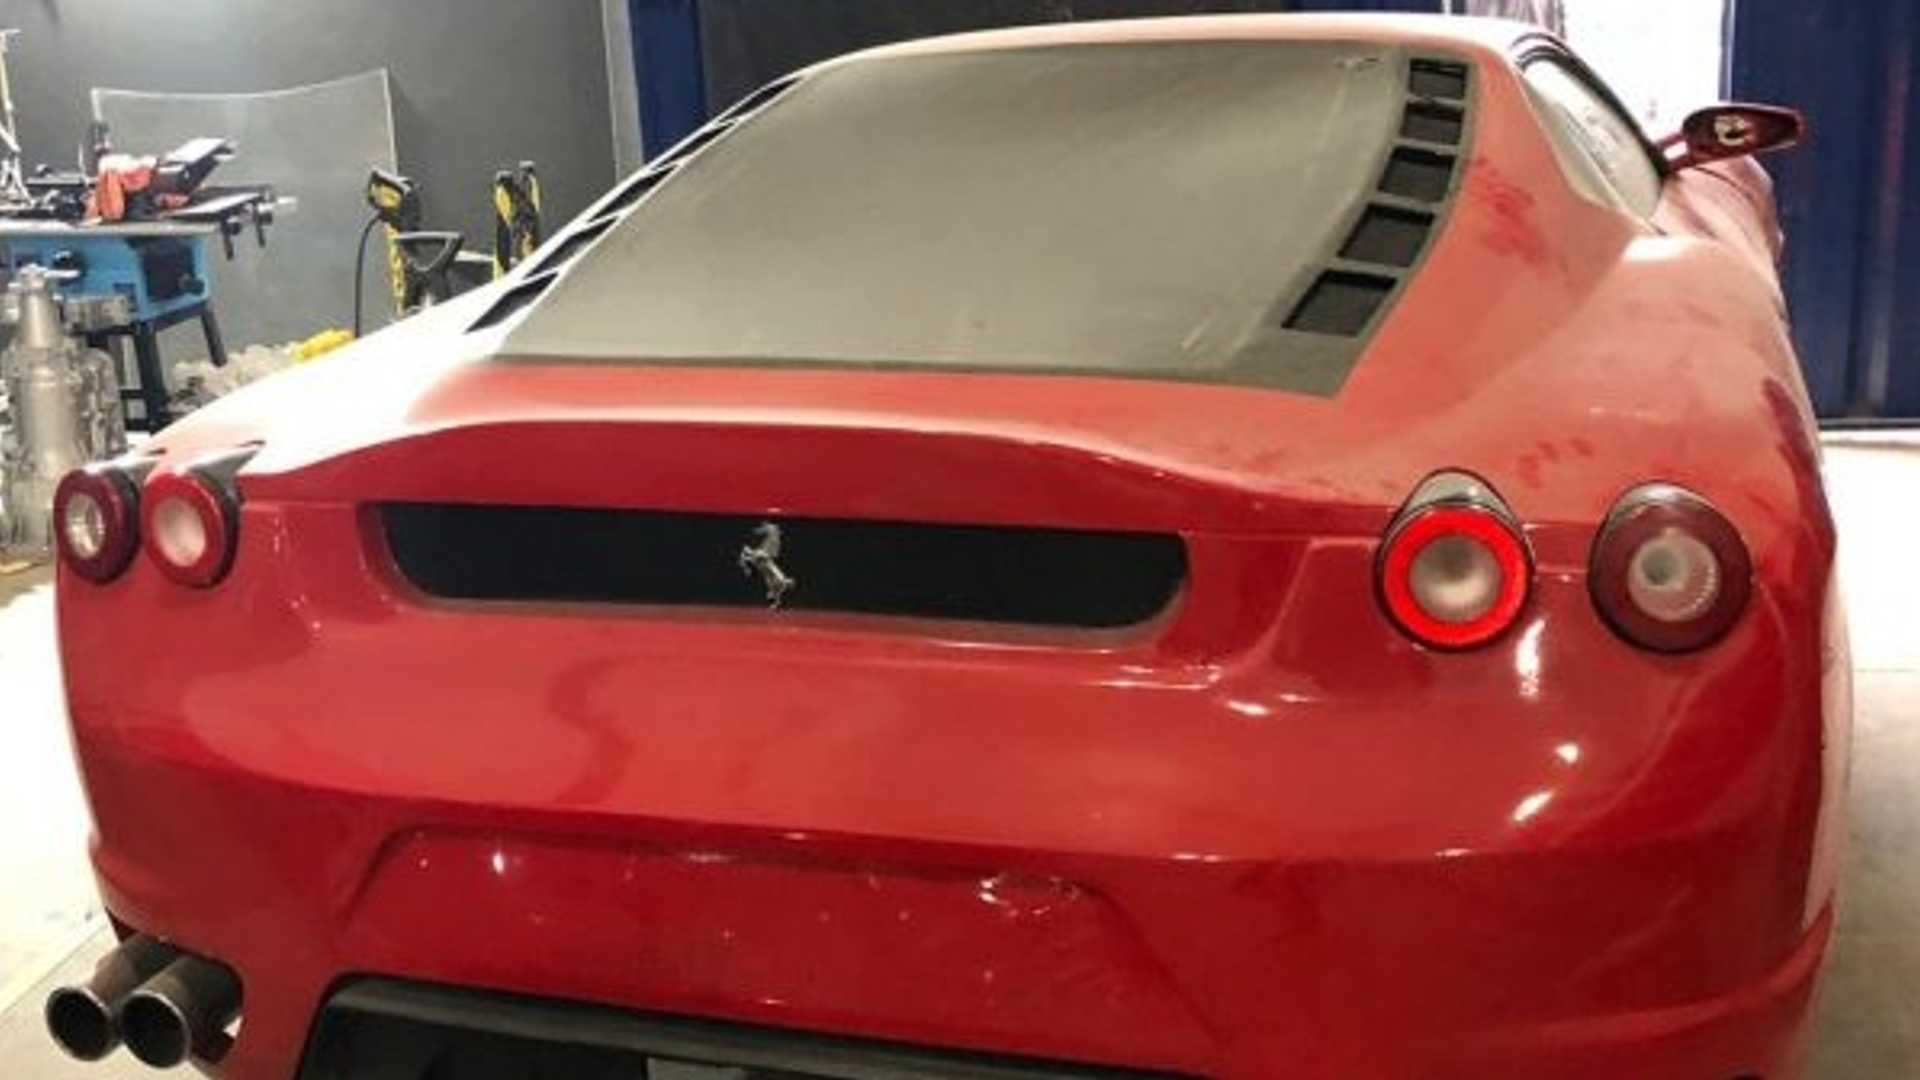 Las autoridades brasileñas cierran una fábrica dedicada a producir réplicas de Ferrari y Lamborghini